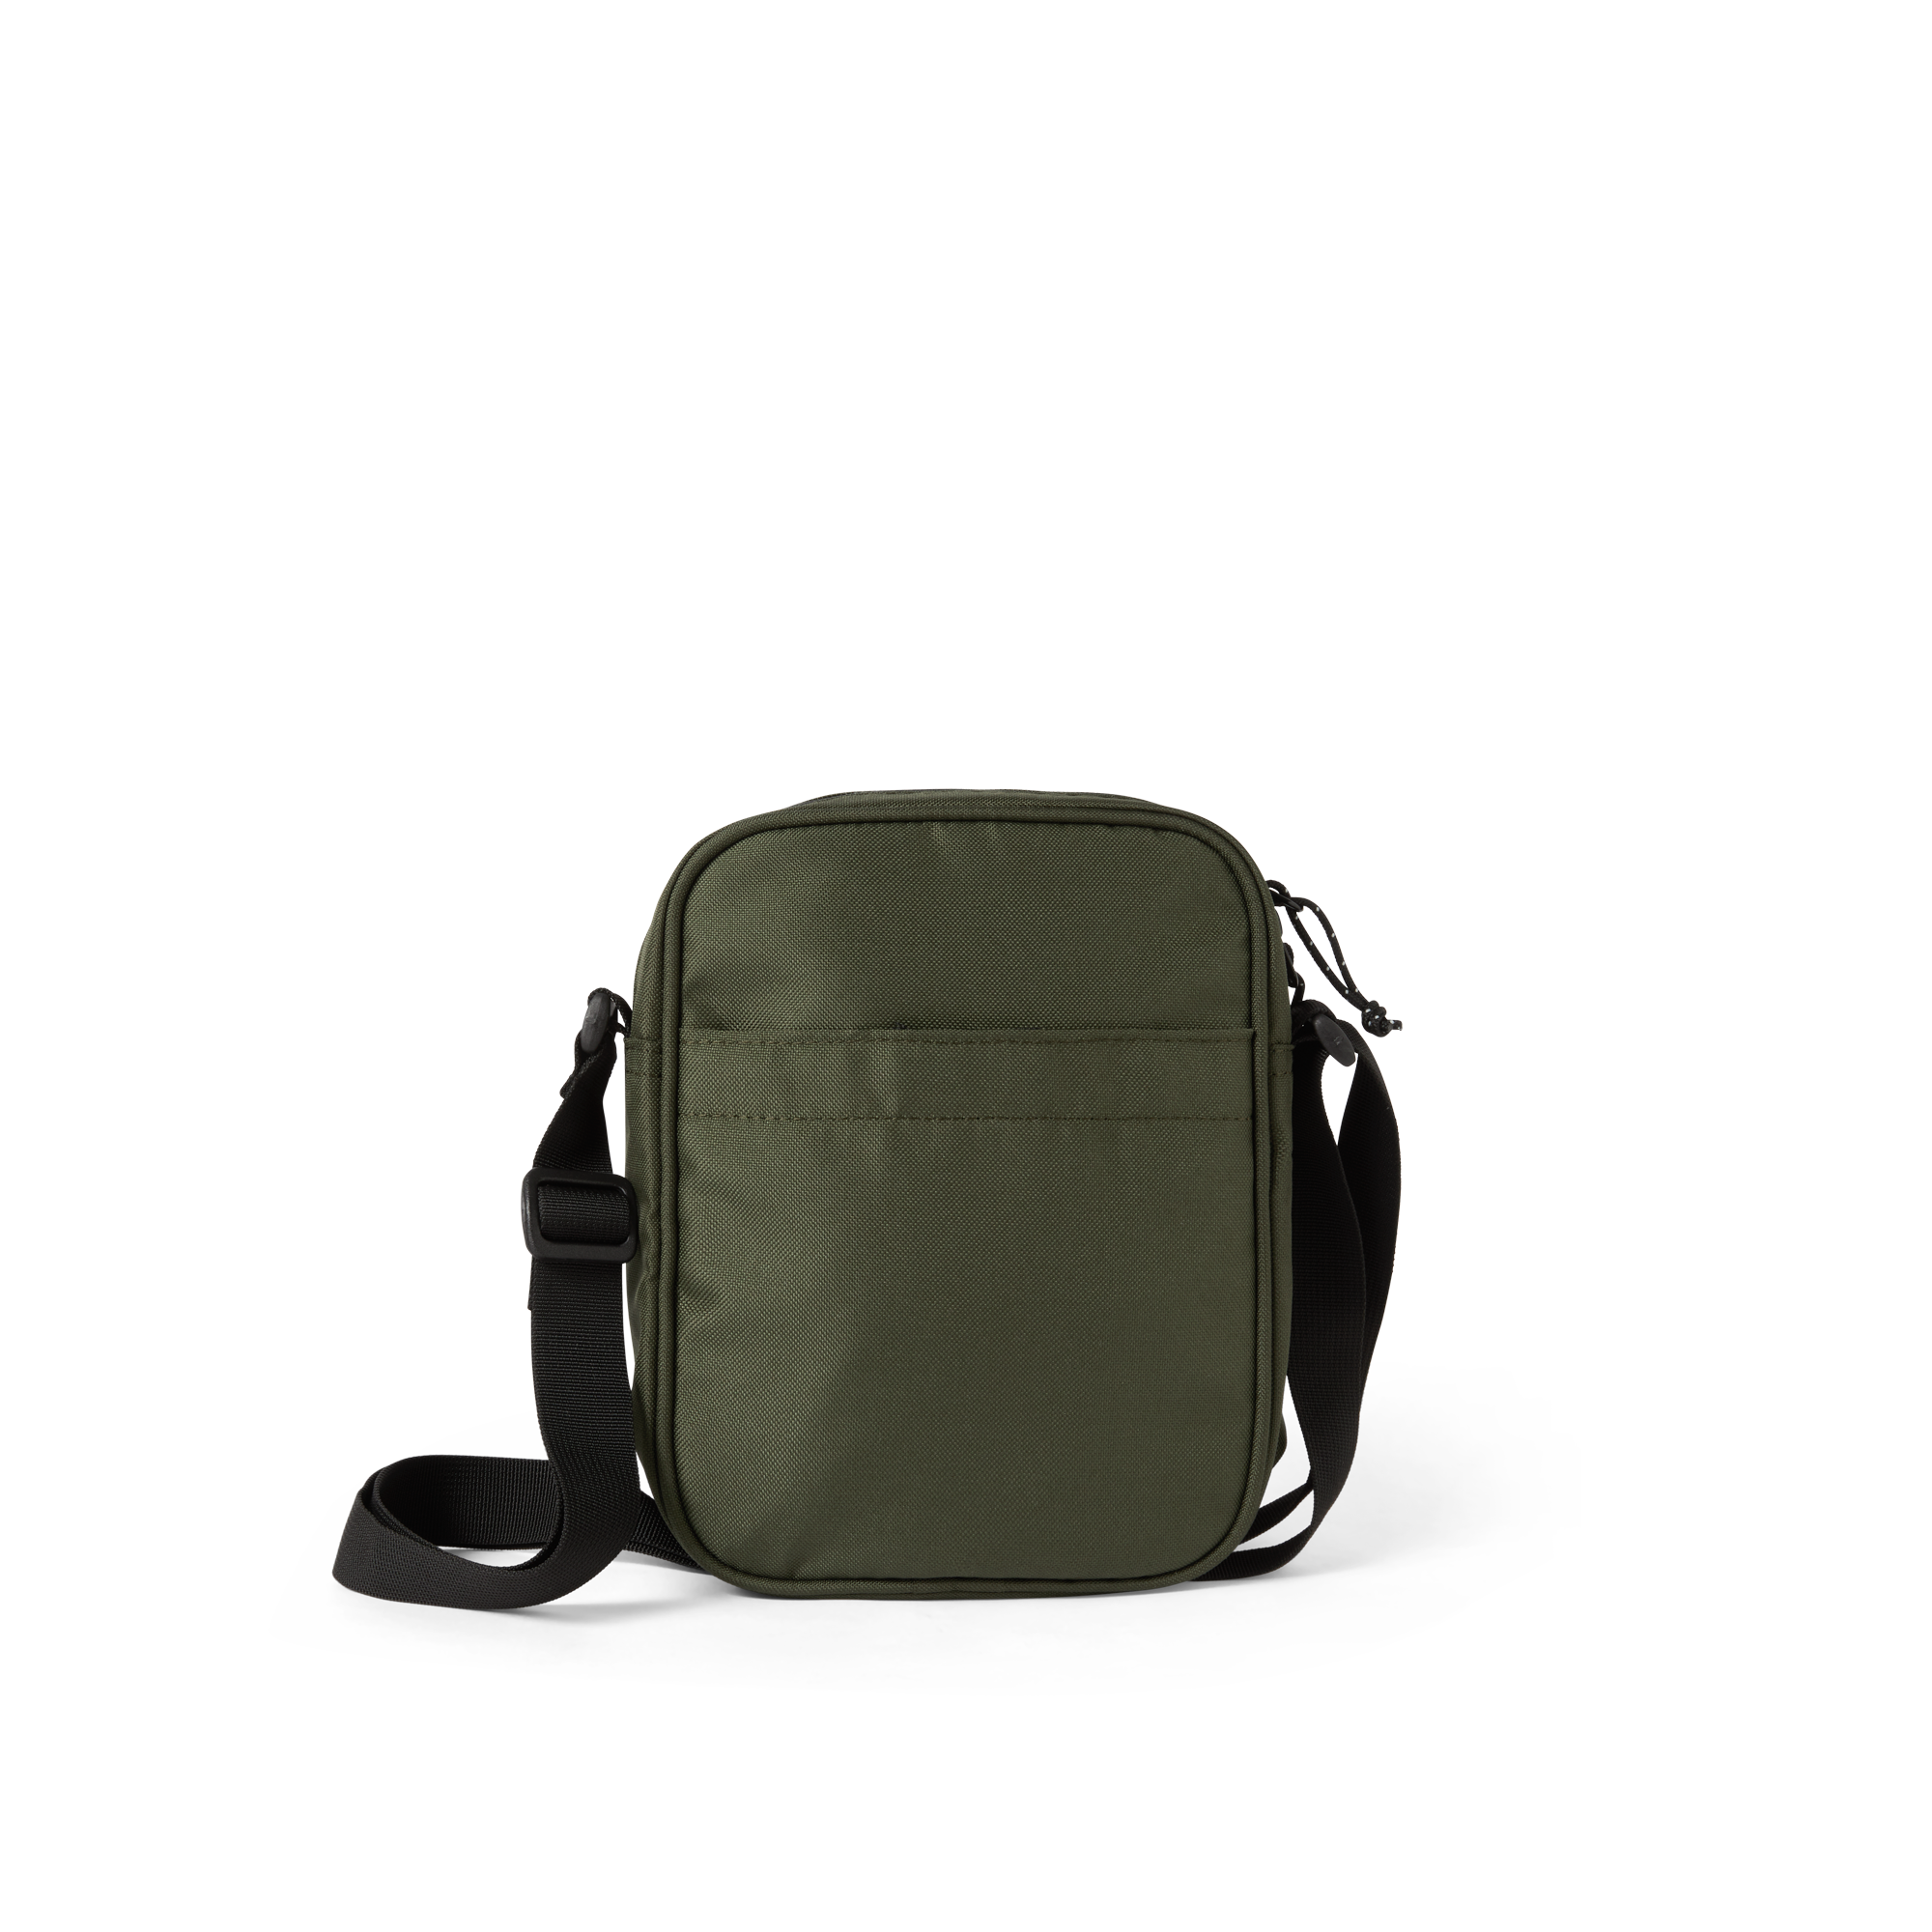 POLAR - Cordura Pocket Dealer Bag "Army Green"